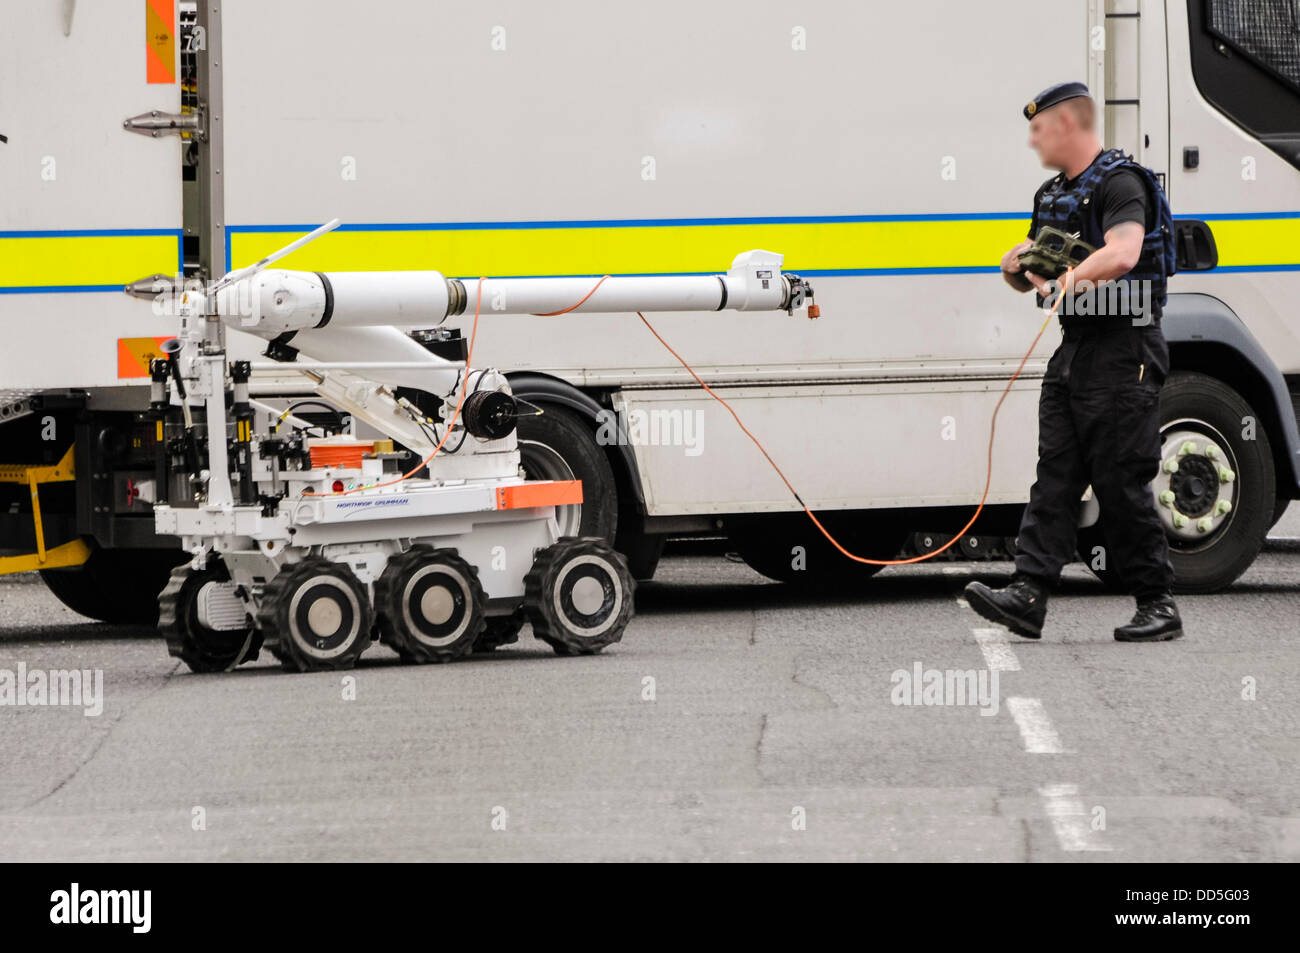 Newtownabbey, Nordirland. 26. August 2013. Eine Armee Roboter bewegt sich ATO einen Northrop Grumman Andros in Position, um ihn mit einem verdächtigen Gerät vorzubereiten. Bildnachweis: Stephen Barnes/Alamy Live-Nachrichten Stockfoto